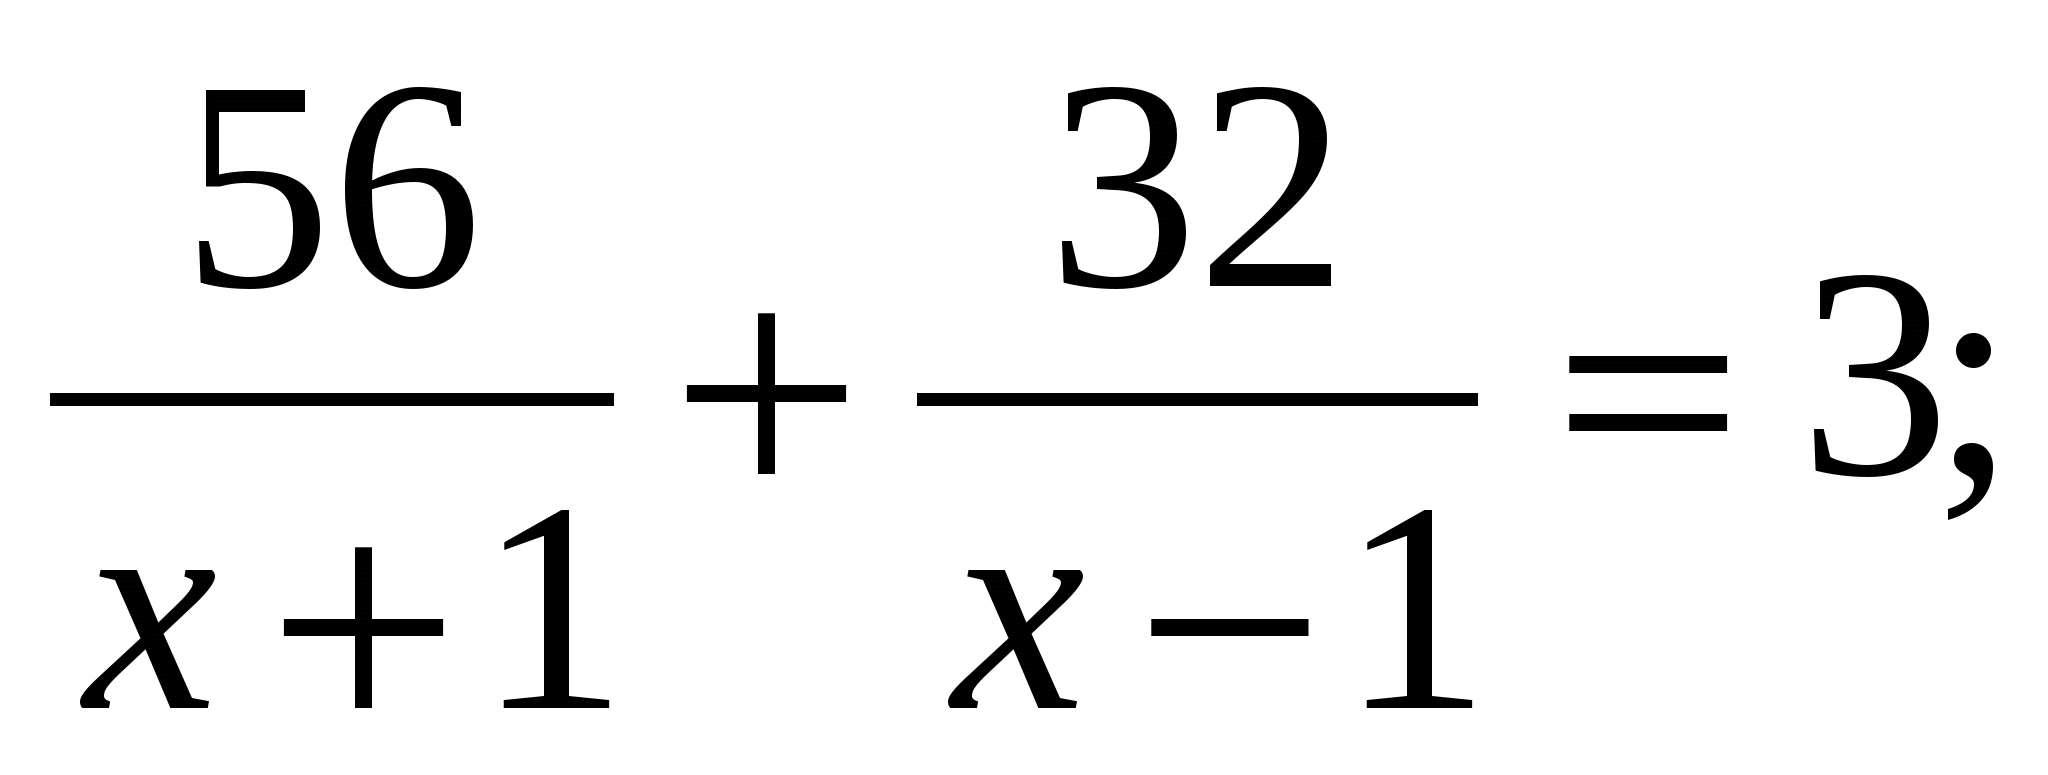 Уравнения 9 класс тесты. Уравнения 8 класс по алгебре. Дробные уравнения 8 класс. Решение задач с помощью рациональных уравнений. Алгебра 8 класс решение задач с помощью рациональных уравнений.